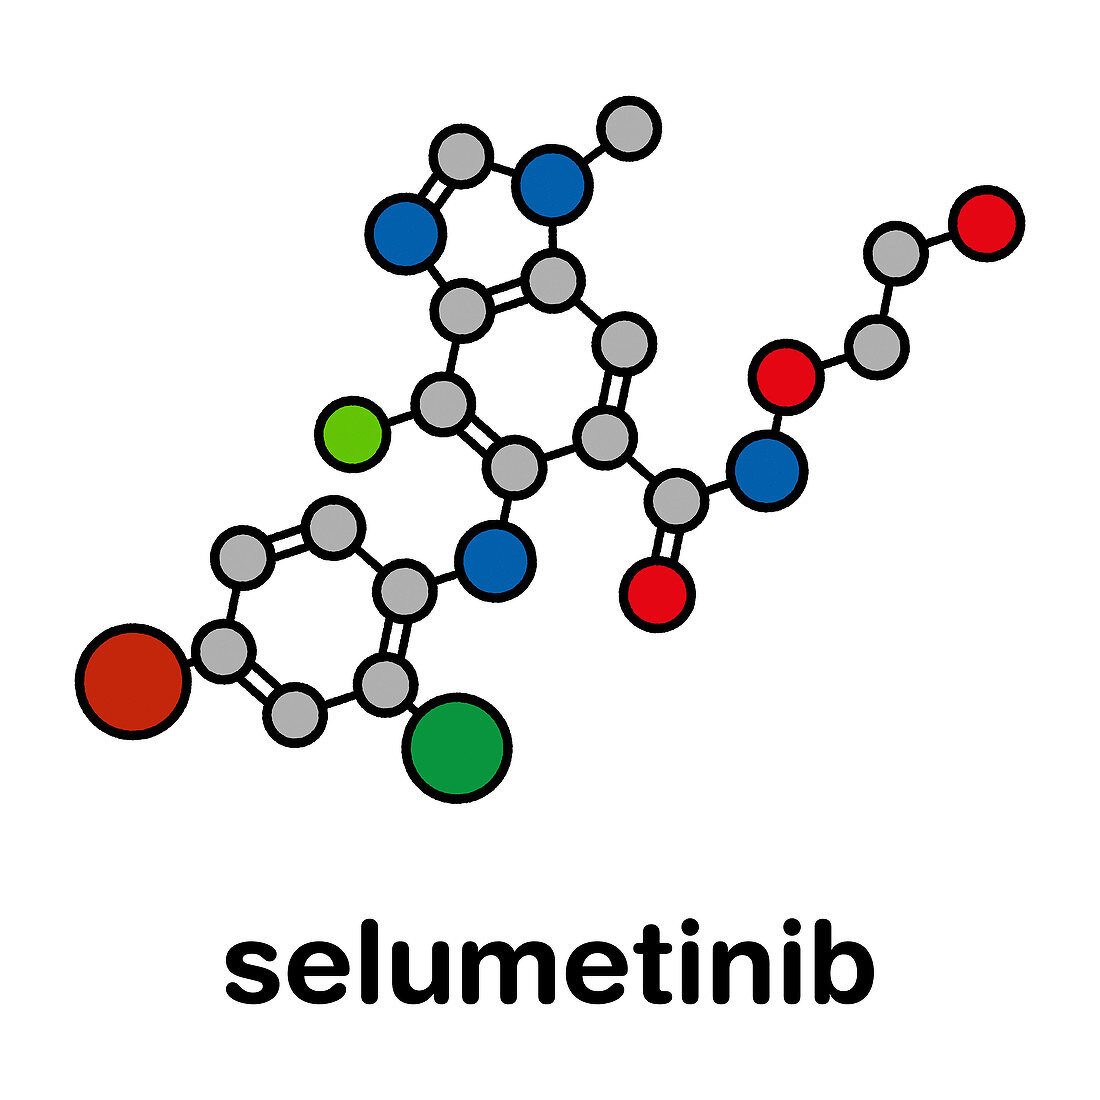 Selumetinib cancer drug molecule